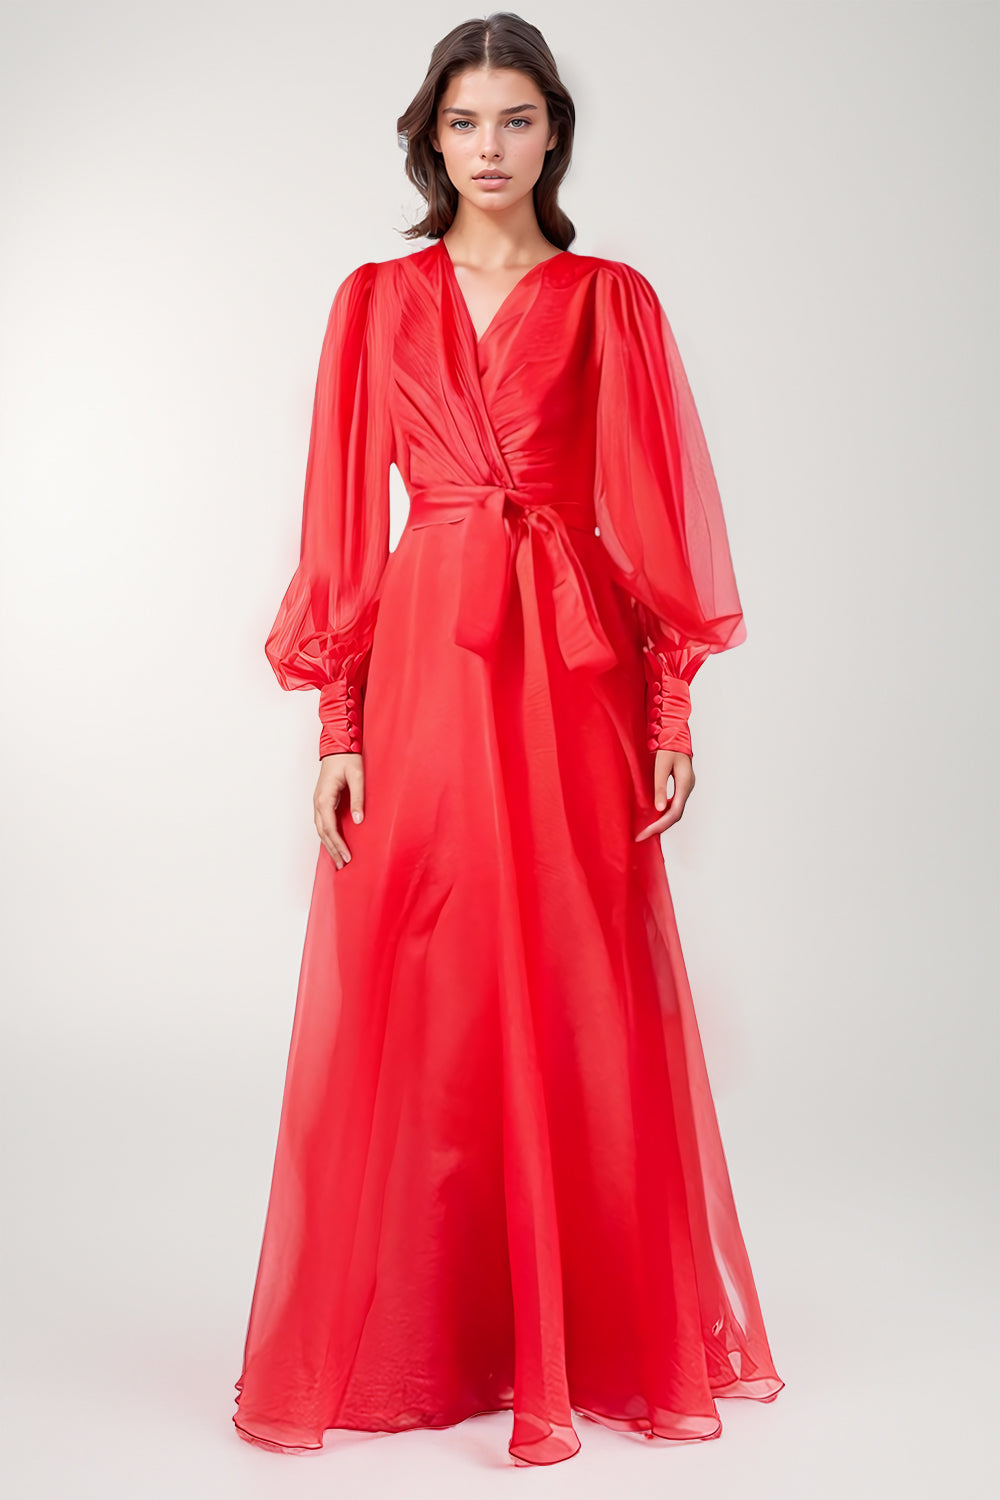 Siateczkowa sukienka maxi z dekoltem w szpic - Czerwona